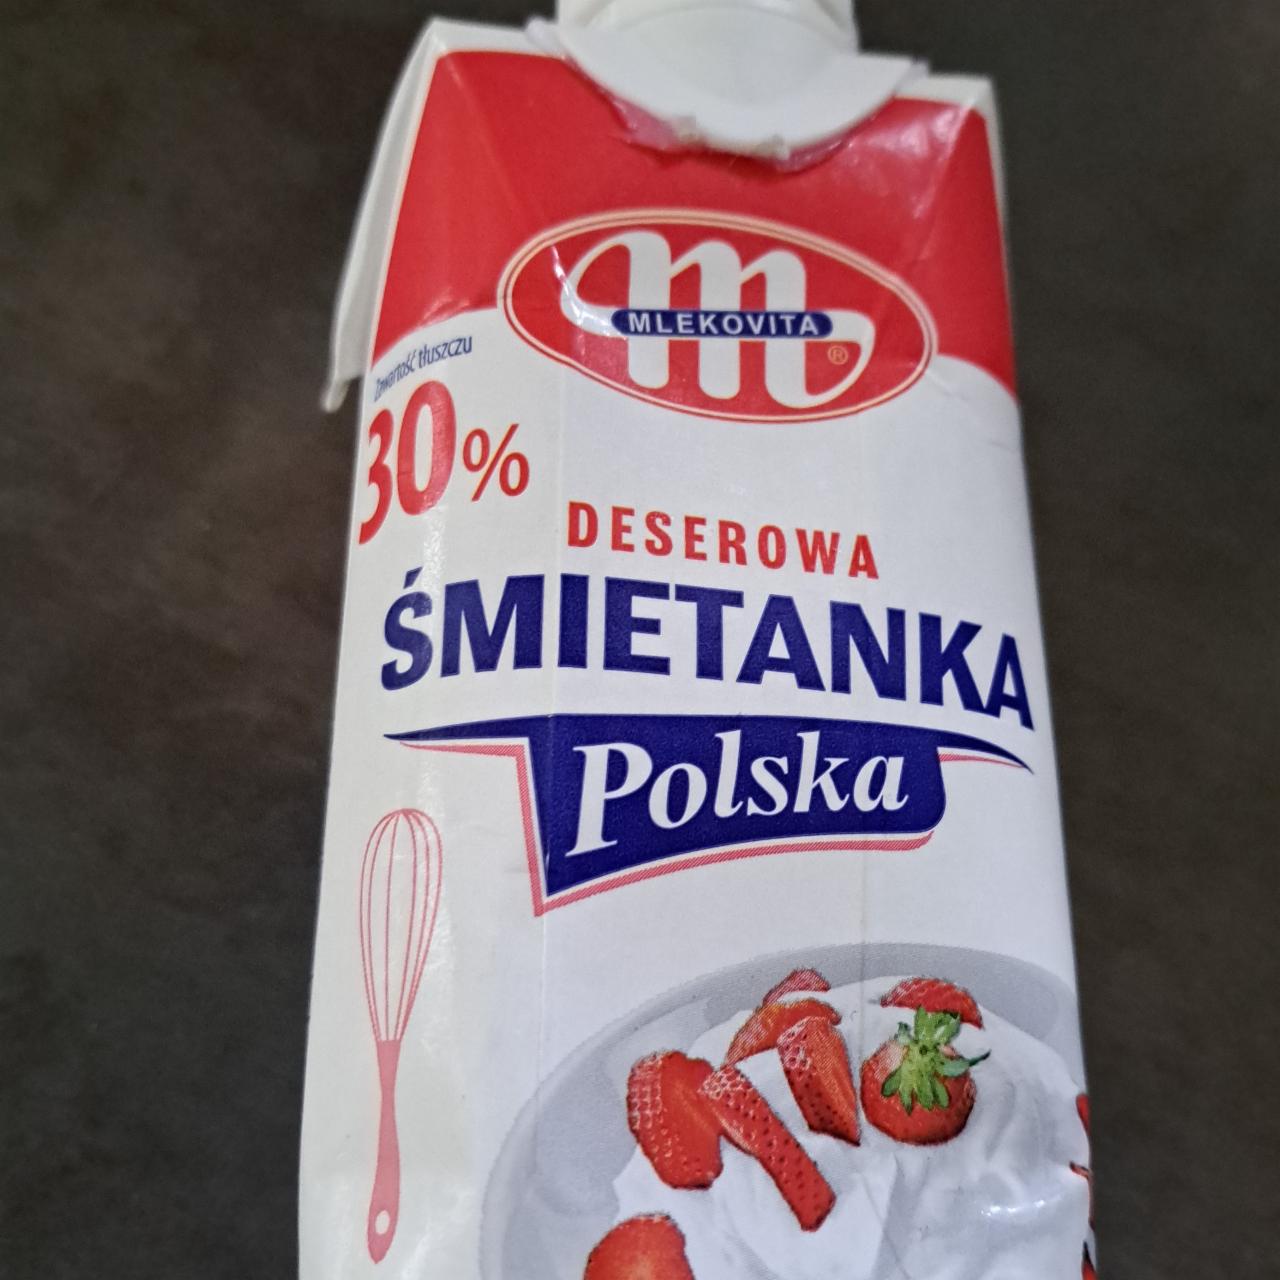 Zdjęcia - Deserowa śmietanka polska 30% Mlekovita